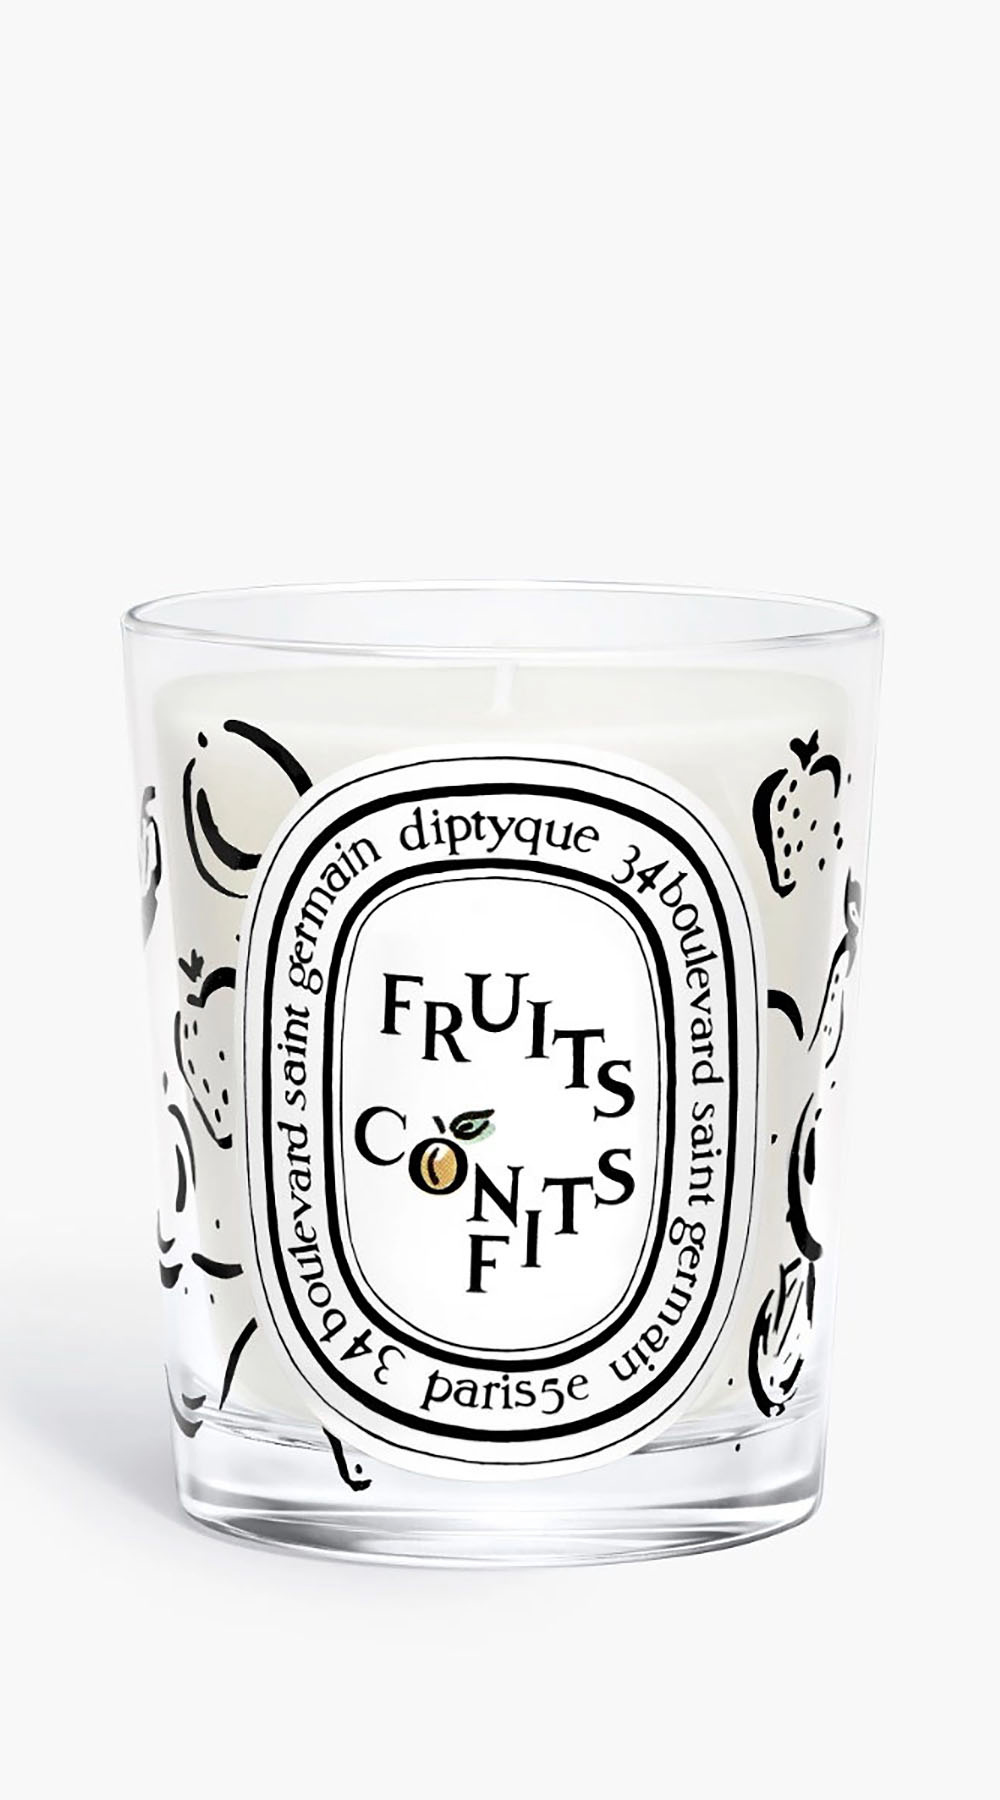 Diptyque Fruits Confit Candle